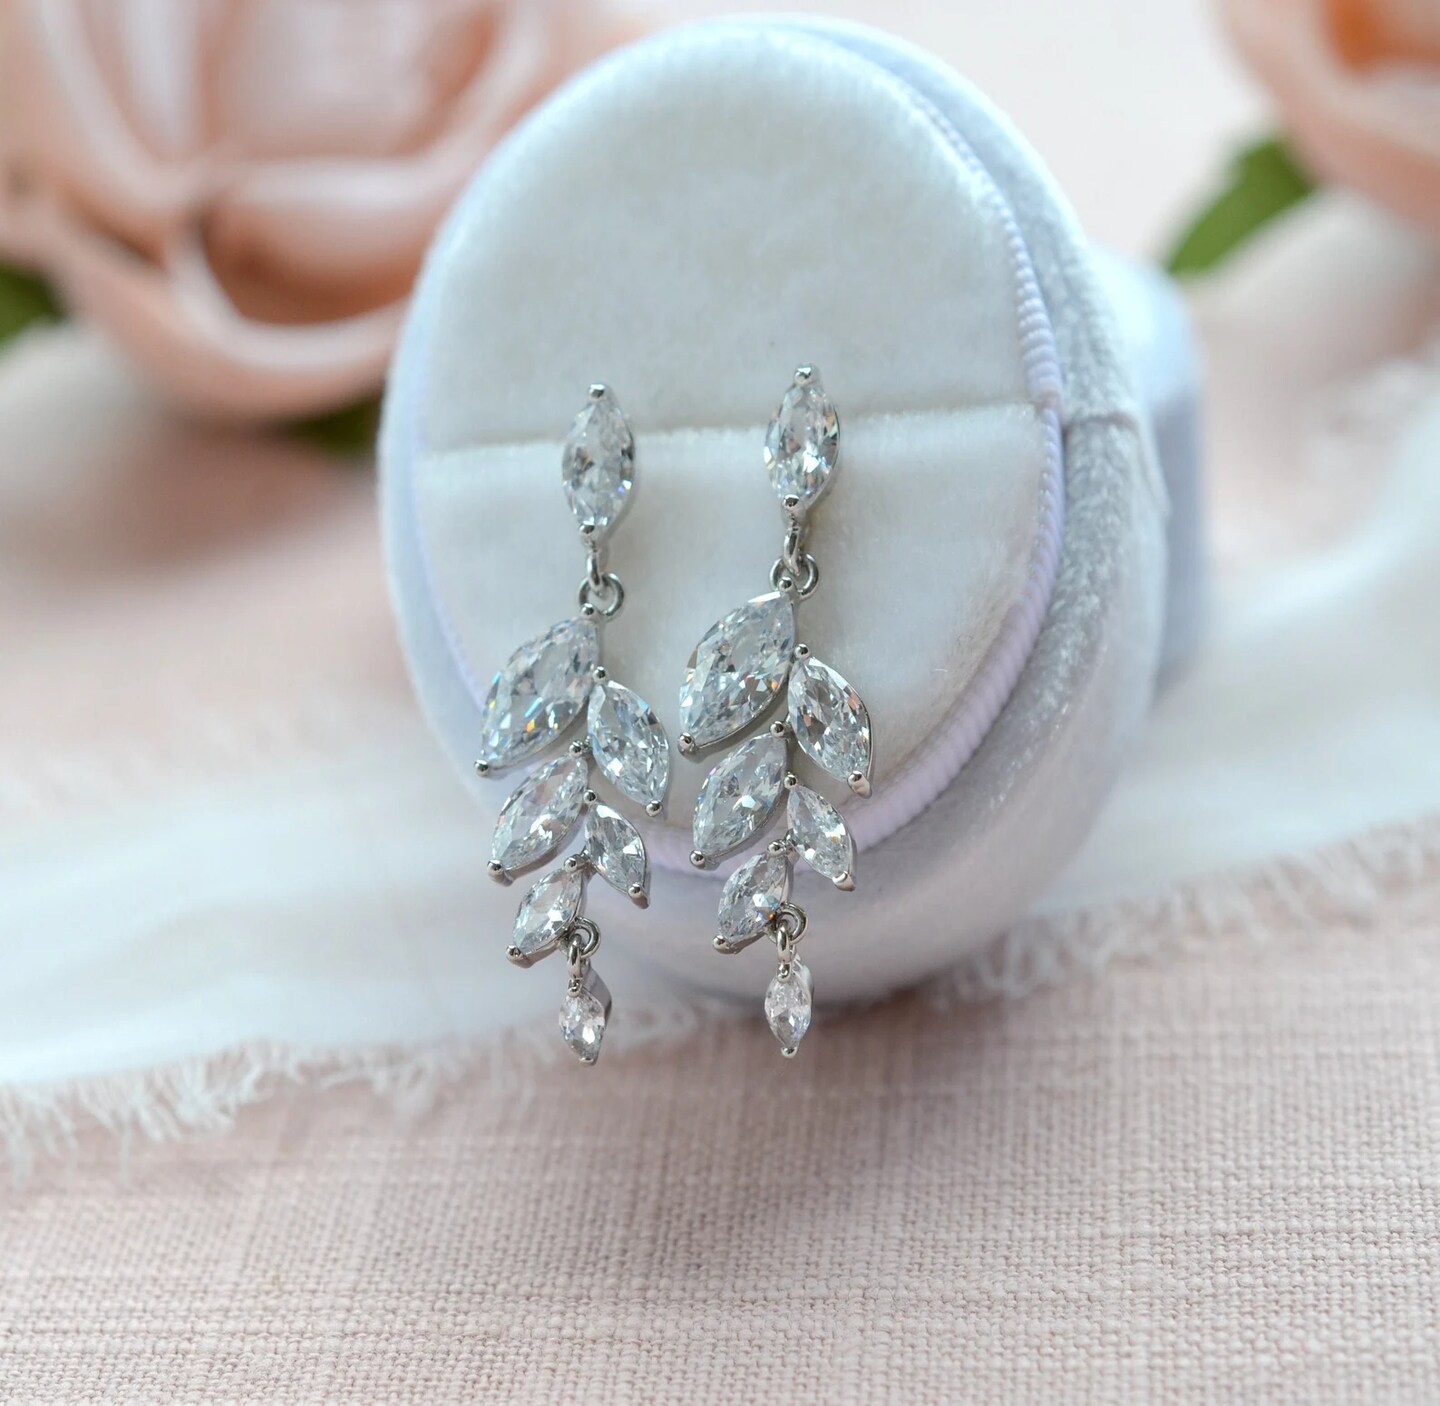 Sparkling crystal bridal earrings - Champagne bubbles linear drop earrings  - Style #2437 | Twigs & Honey ®, LLC